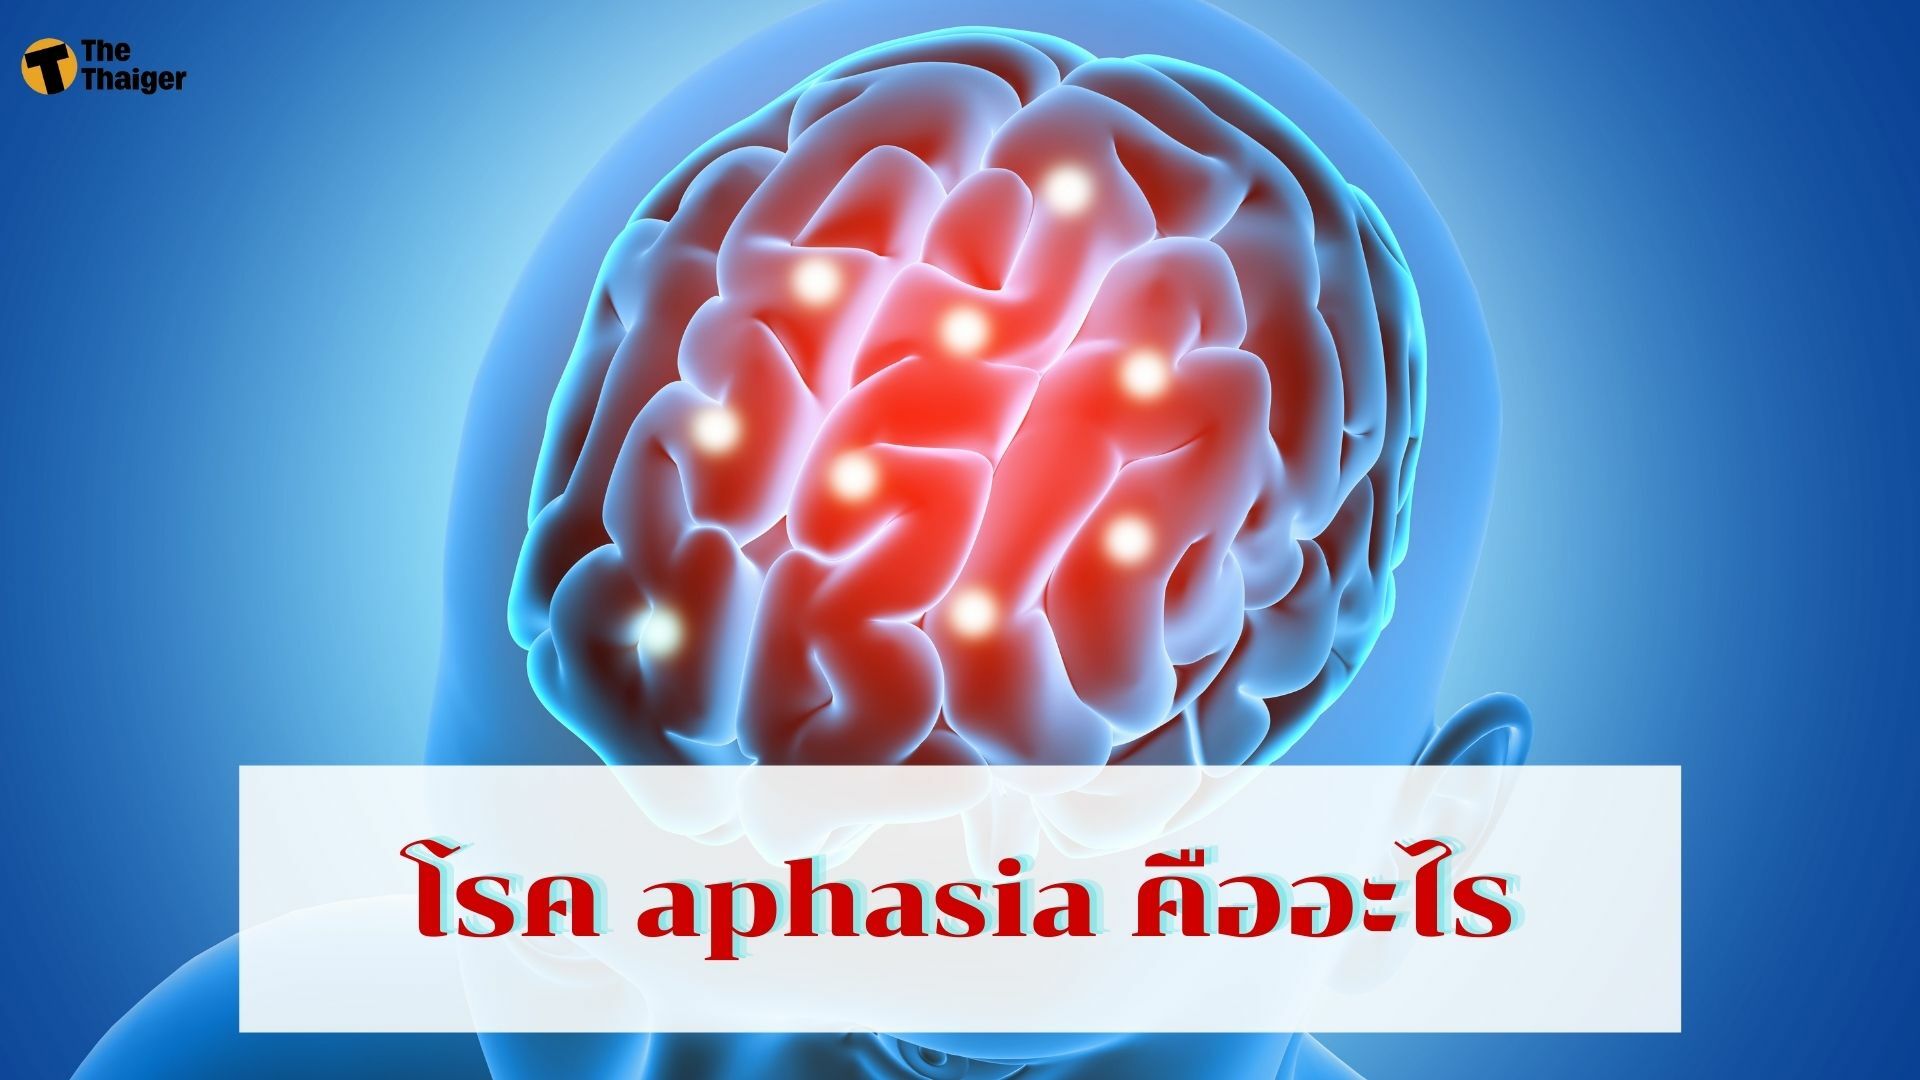 โรค aphasia คืออะไร สาเหตุ มาจากอะไร รักษายังไงได้บ้าง